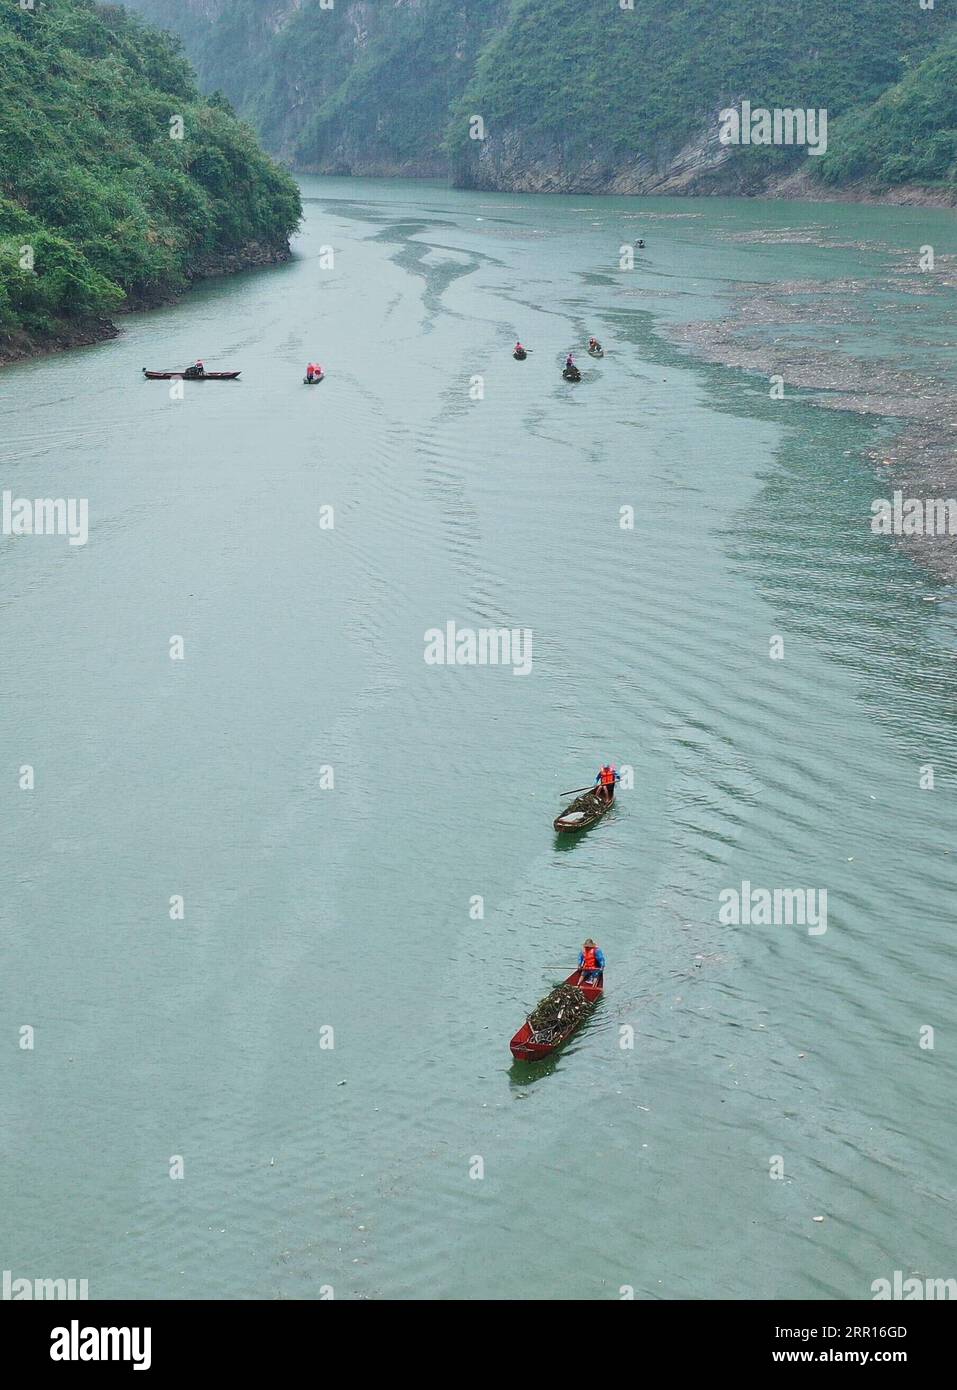 200906 -- ZHANGJIAJIE, 6 settembre 2020 -- la foto aerea mostra gli abitanti del villaggio che sgomberano le flotte dal fiume Maoyan nel distretto di Yongding della città di Zhangjiajie, nella provincia centrale di Hunan della Cina, 6 settembre 2020. La città ha organizzato gente per ripulire regolarmente il fiume per mantenere il fiume senza ostacoli. Foto di /Xinhua CHINA-HUNAN-ZHANGJIAJIE-RIVER-CLEARING WuxYongbing PUBLICATIONxNOTxINxCHN Foto Stock